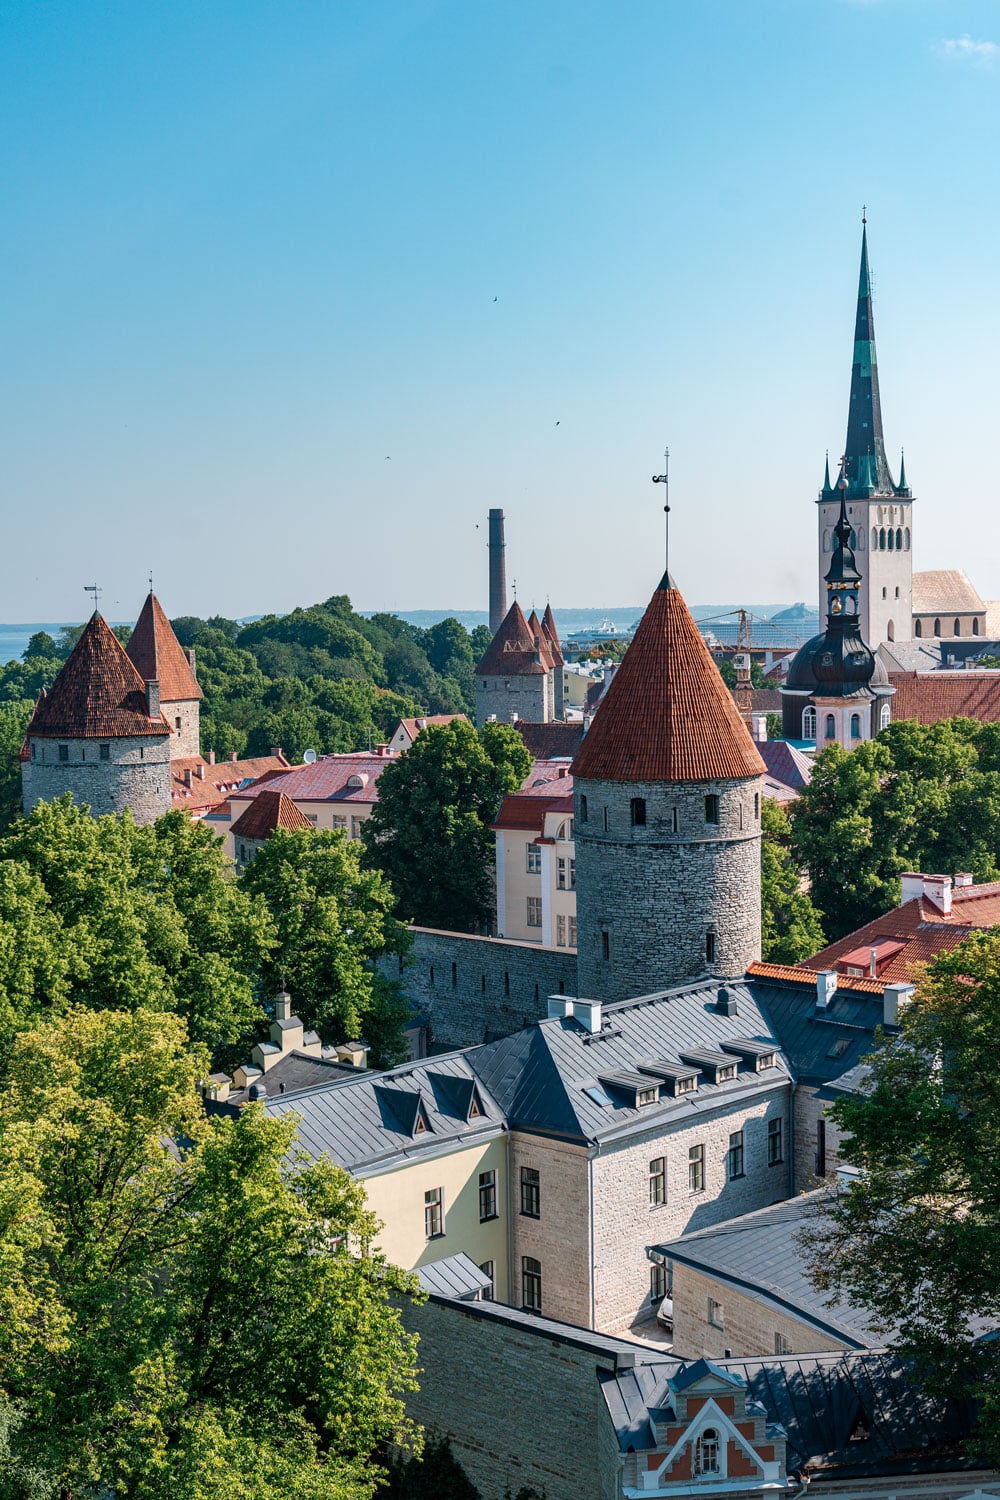 Tallinn seen from viewpoint